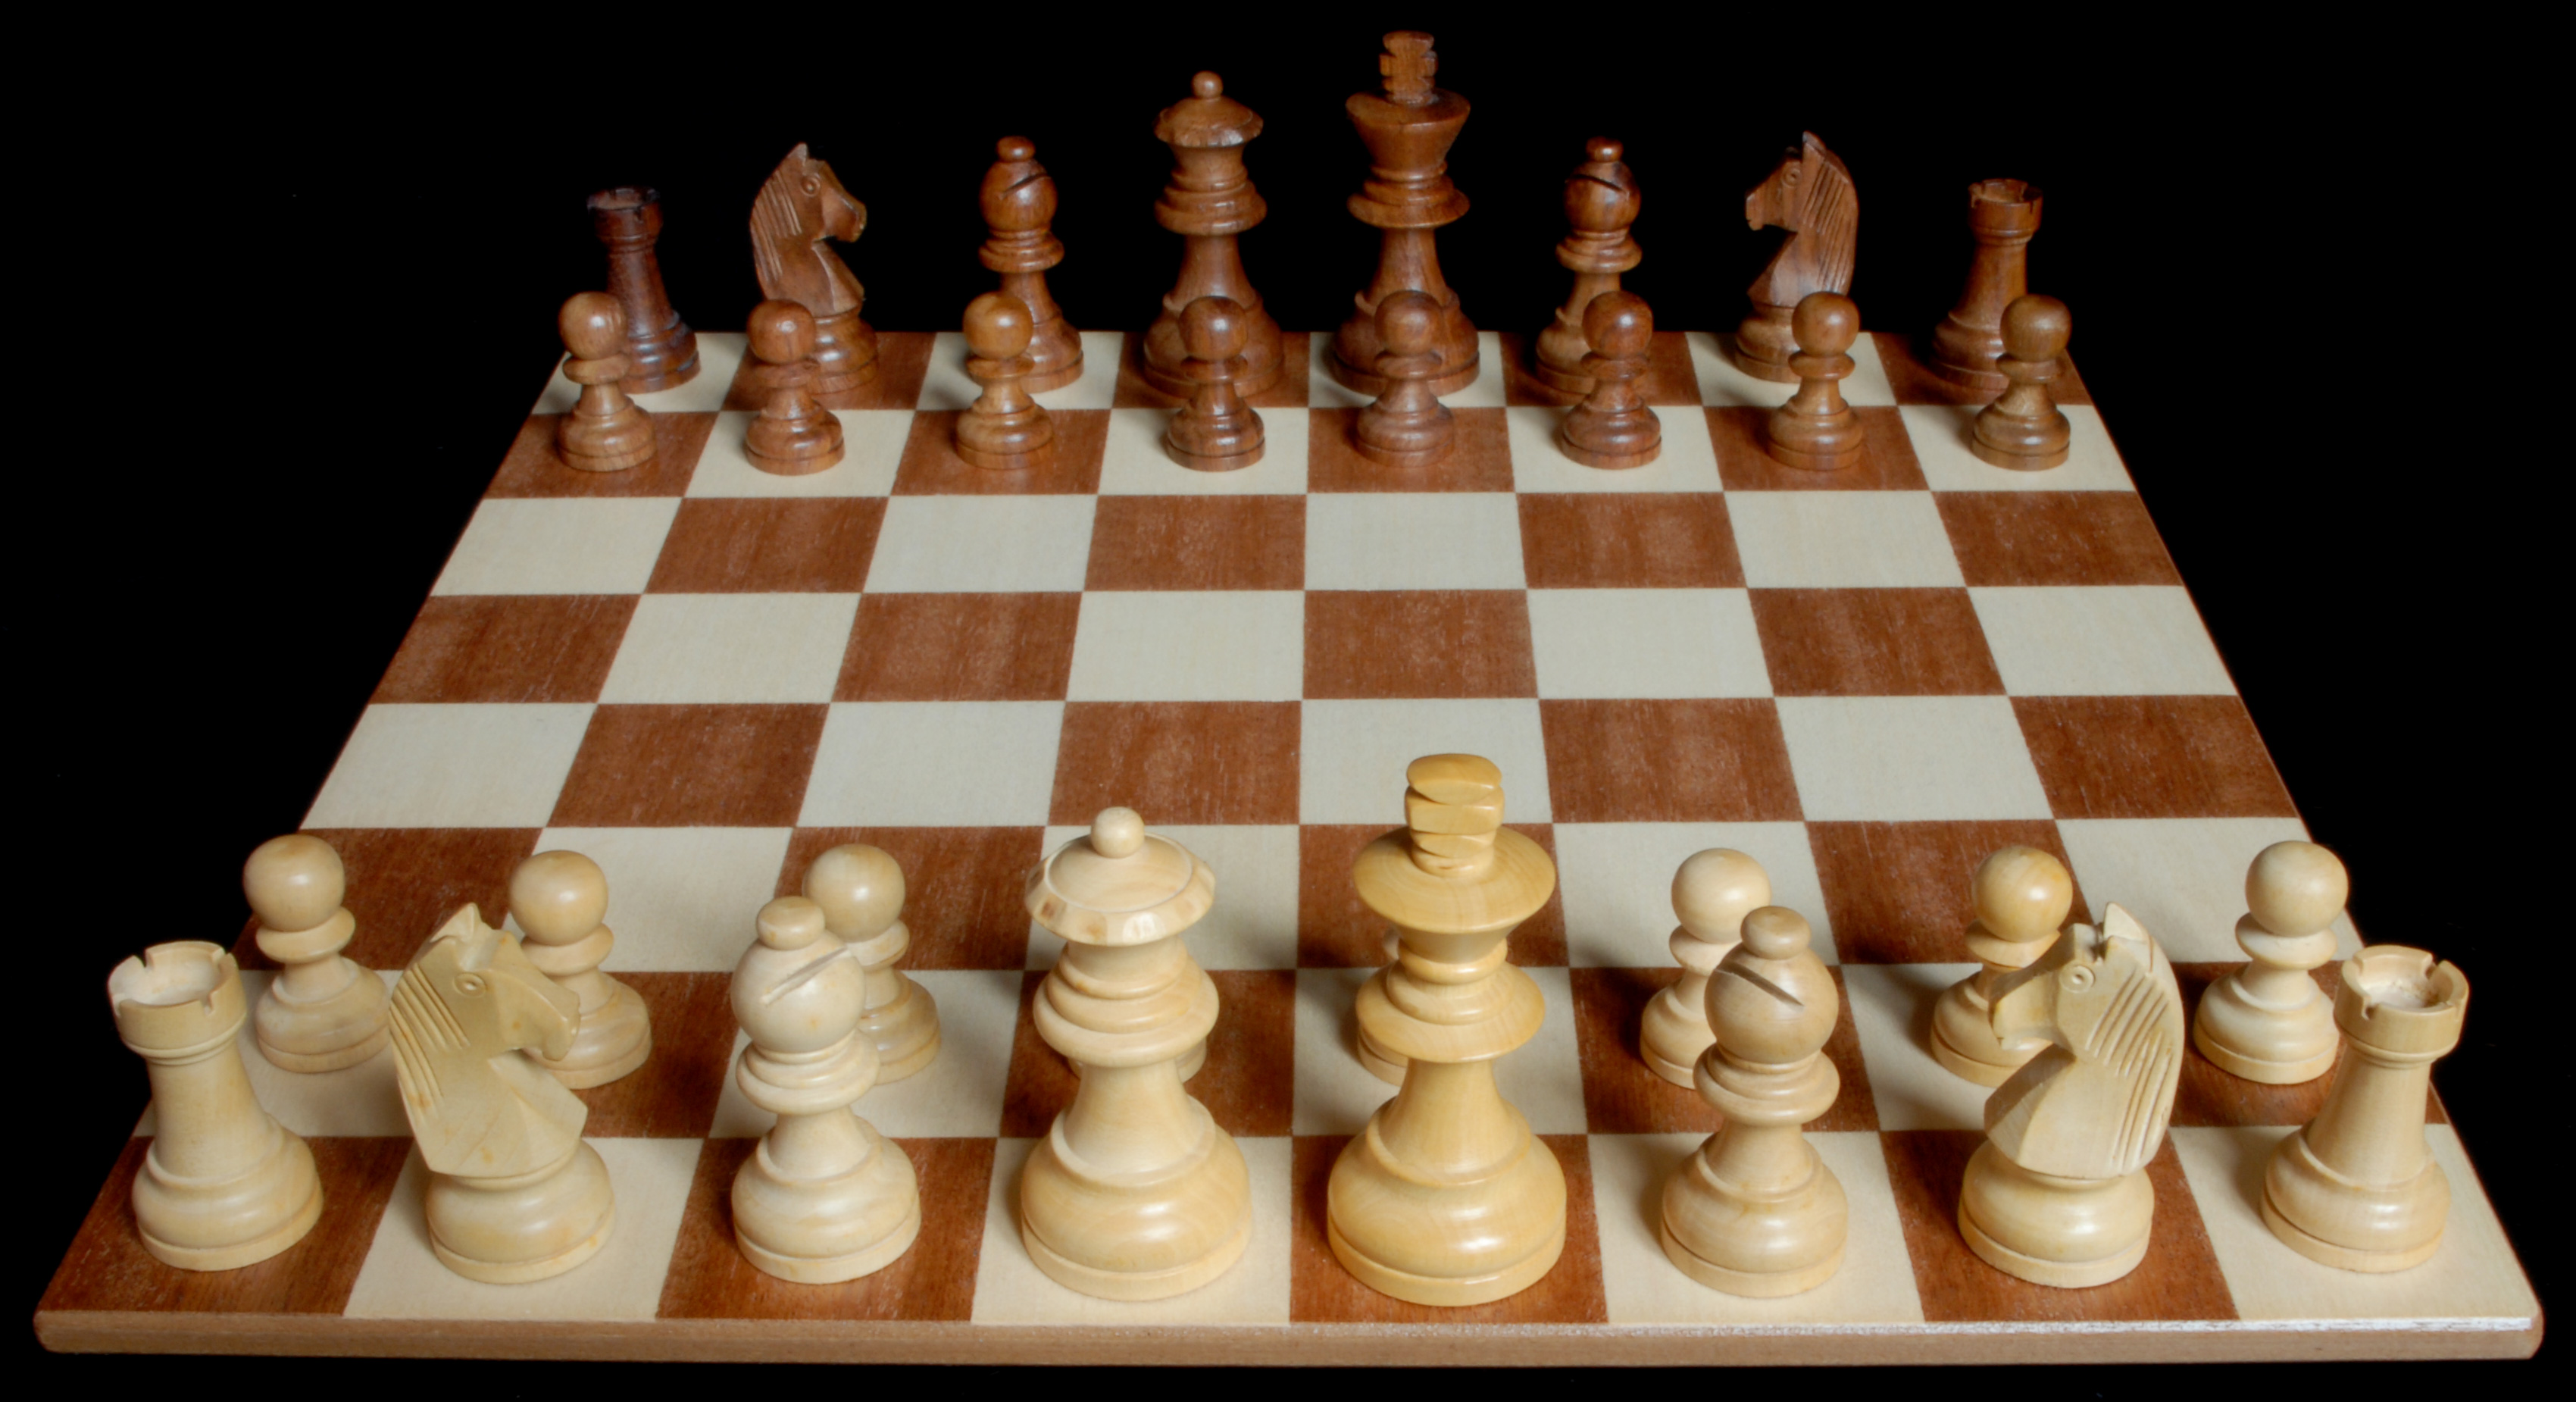 Las piezas y el tablero de Ajedrez :: Aprender a jugar ajedrez